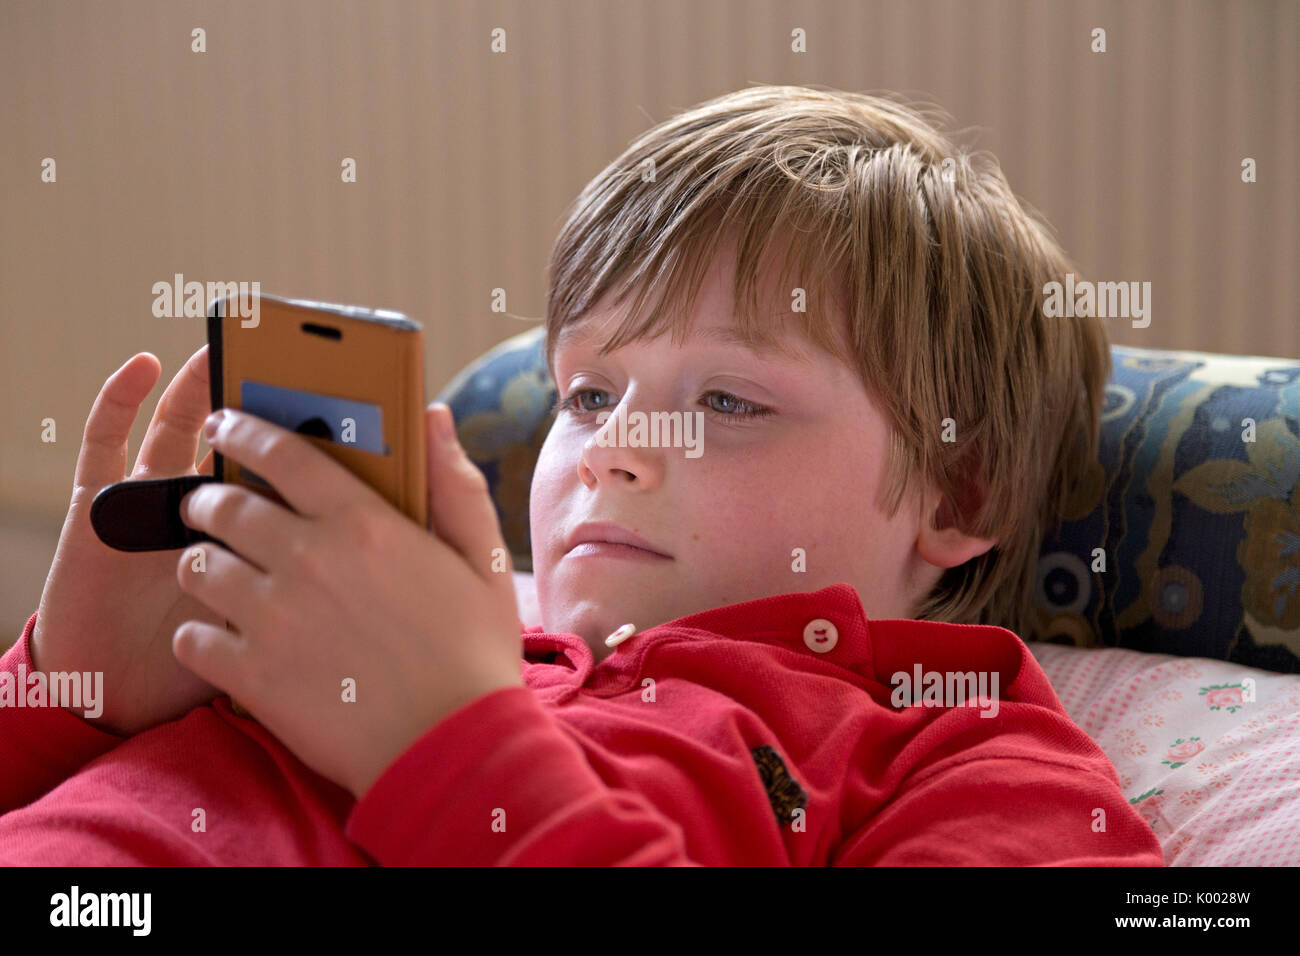 Junge lag auf seinem Bett mit seinem Smartphone Stockfoto